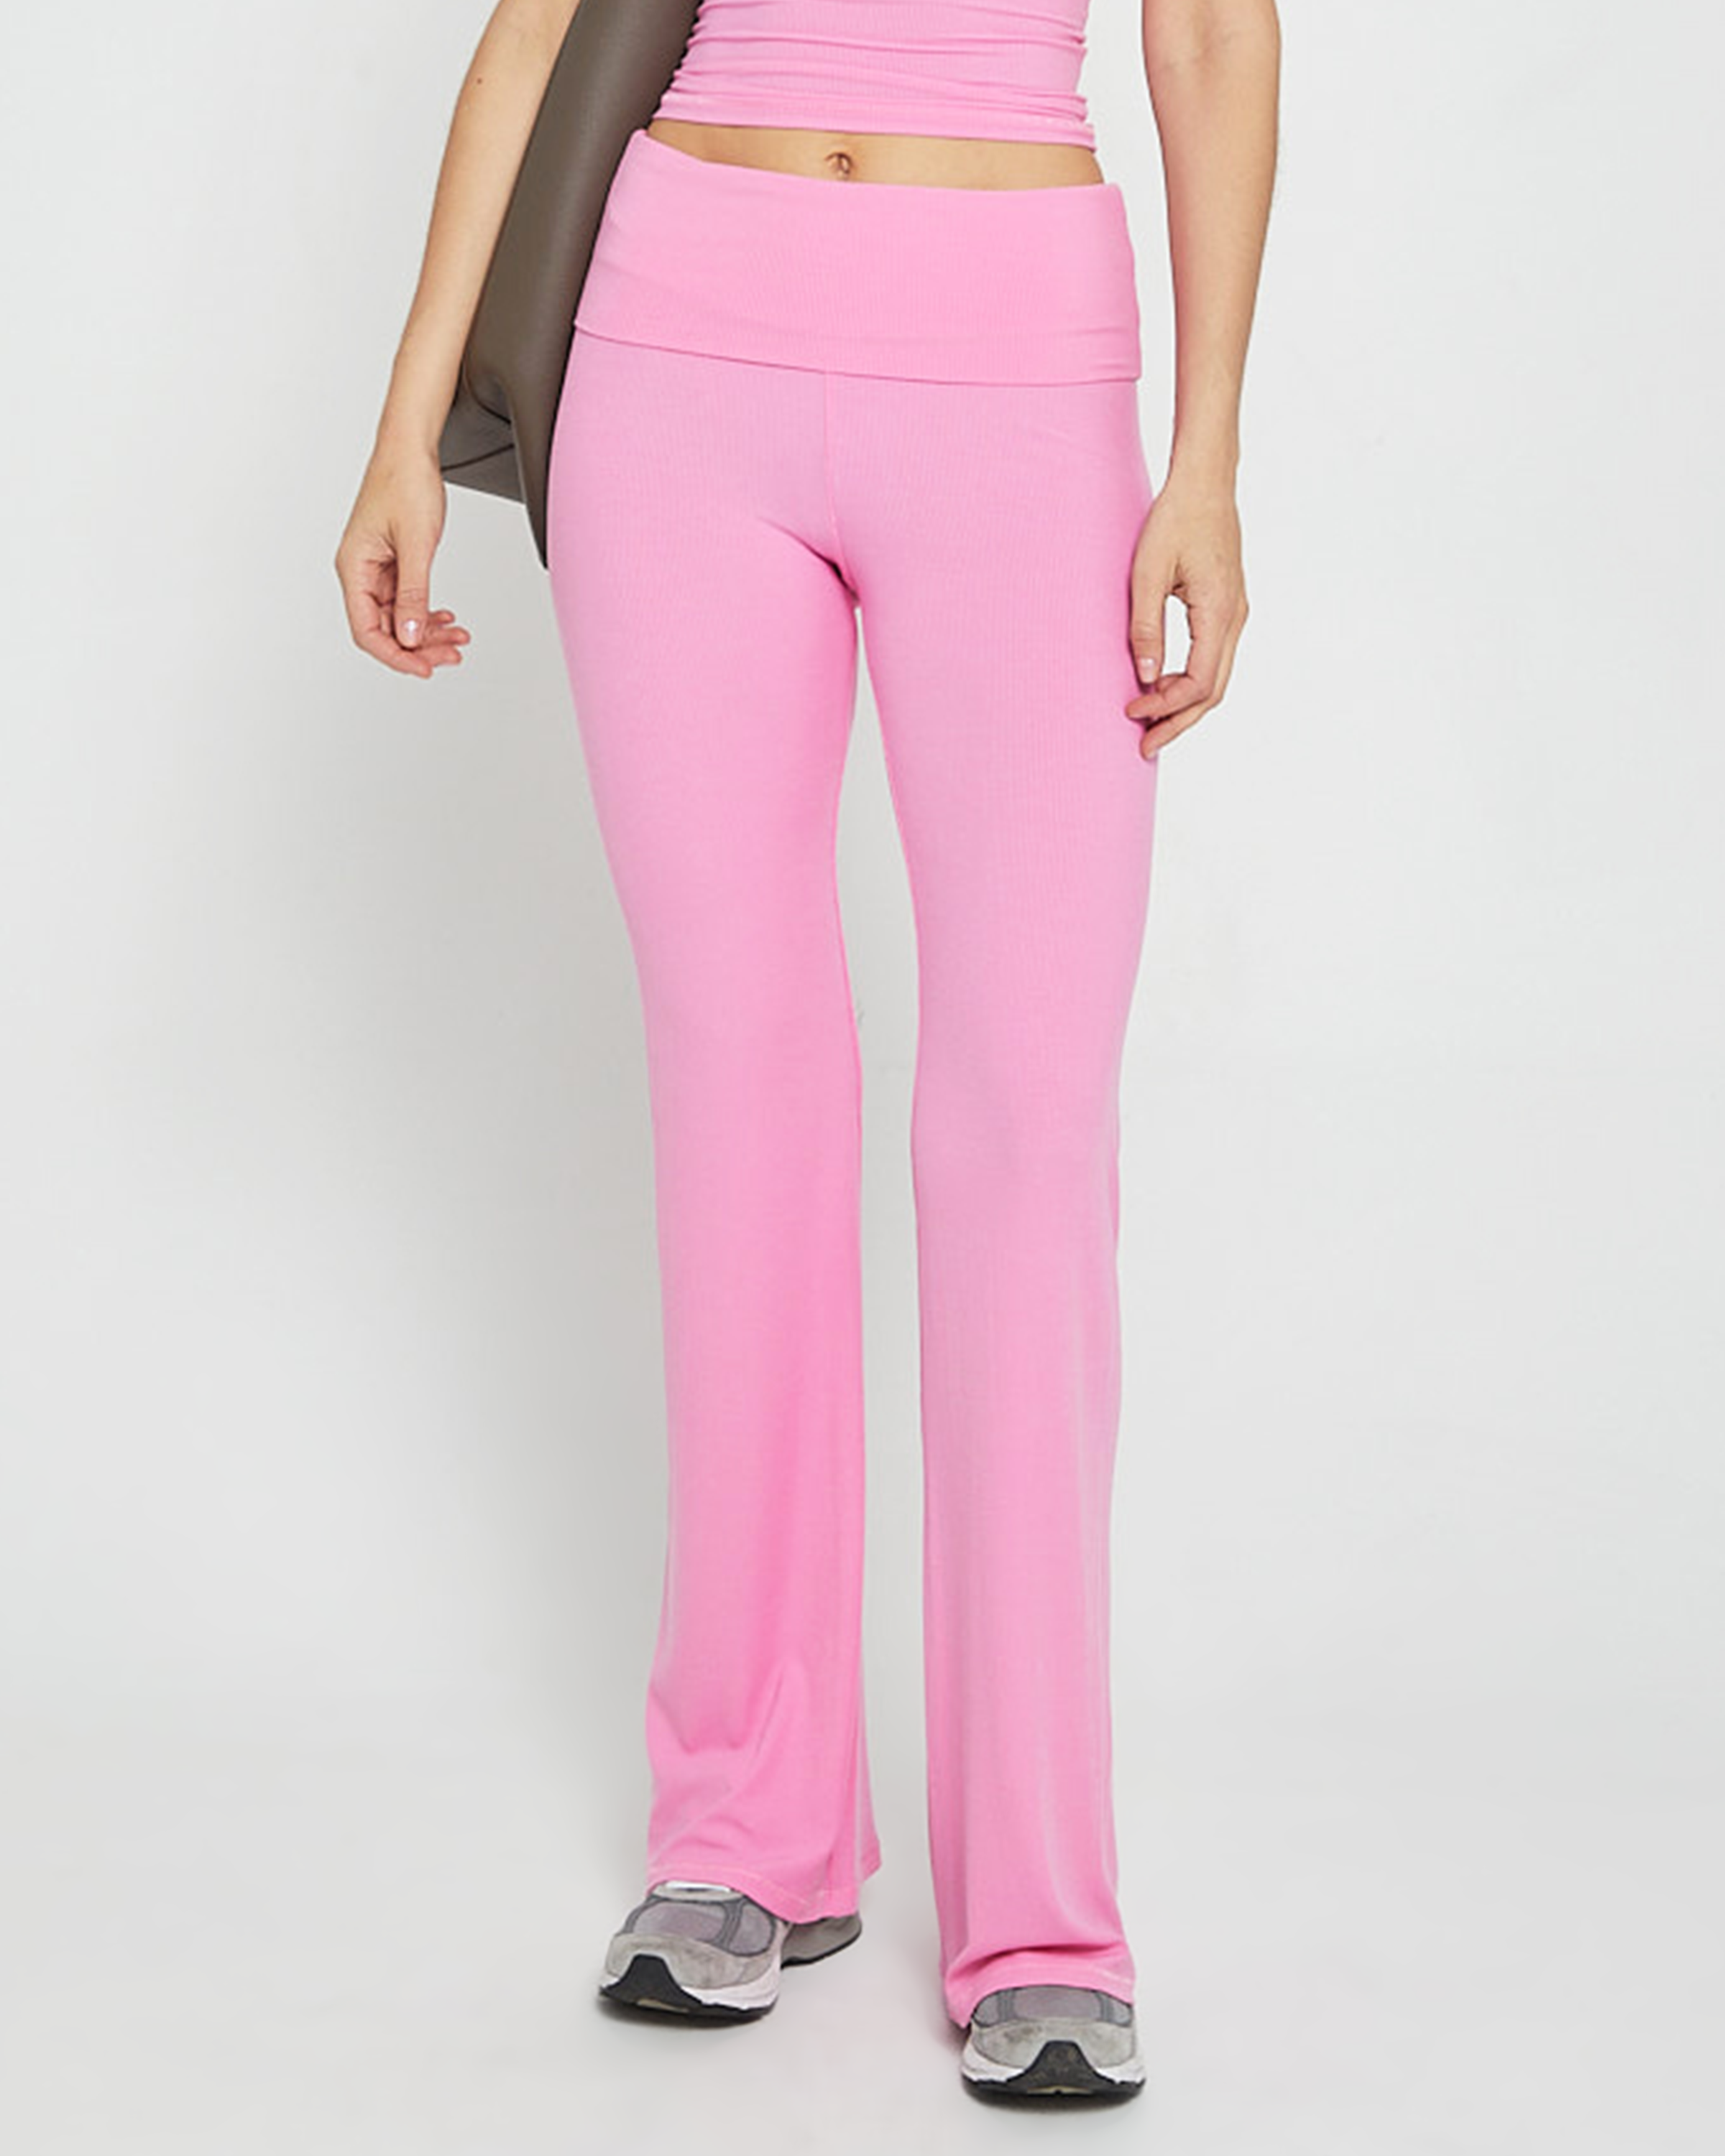  Pink Fold Over Yoga Pants